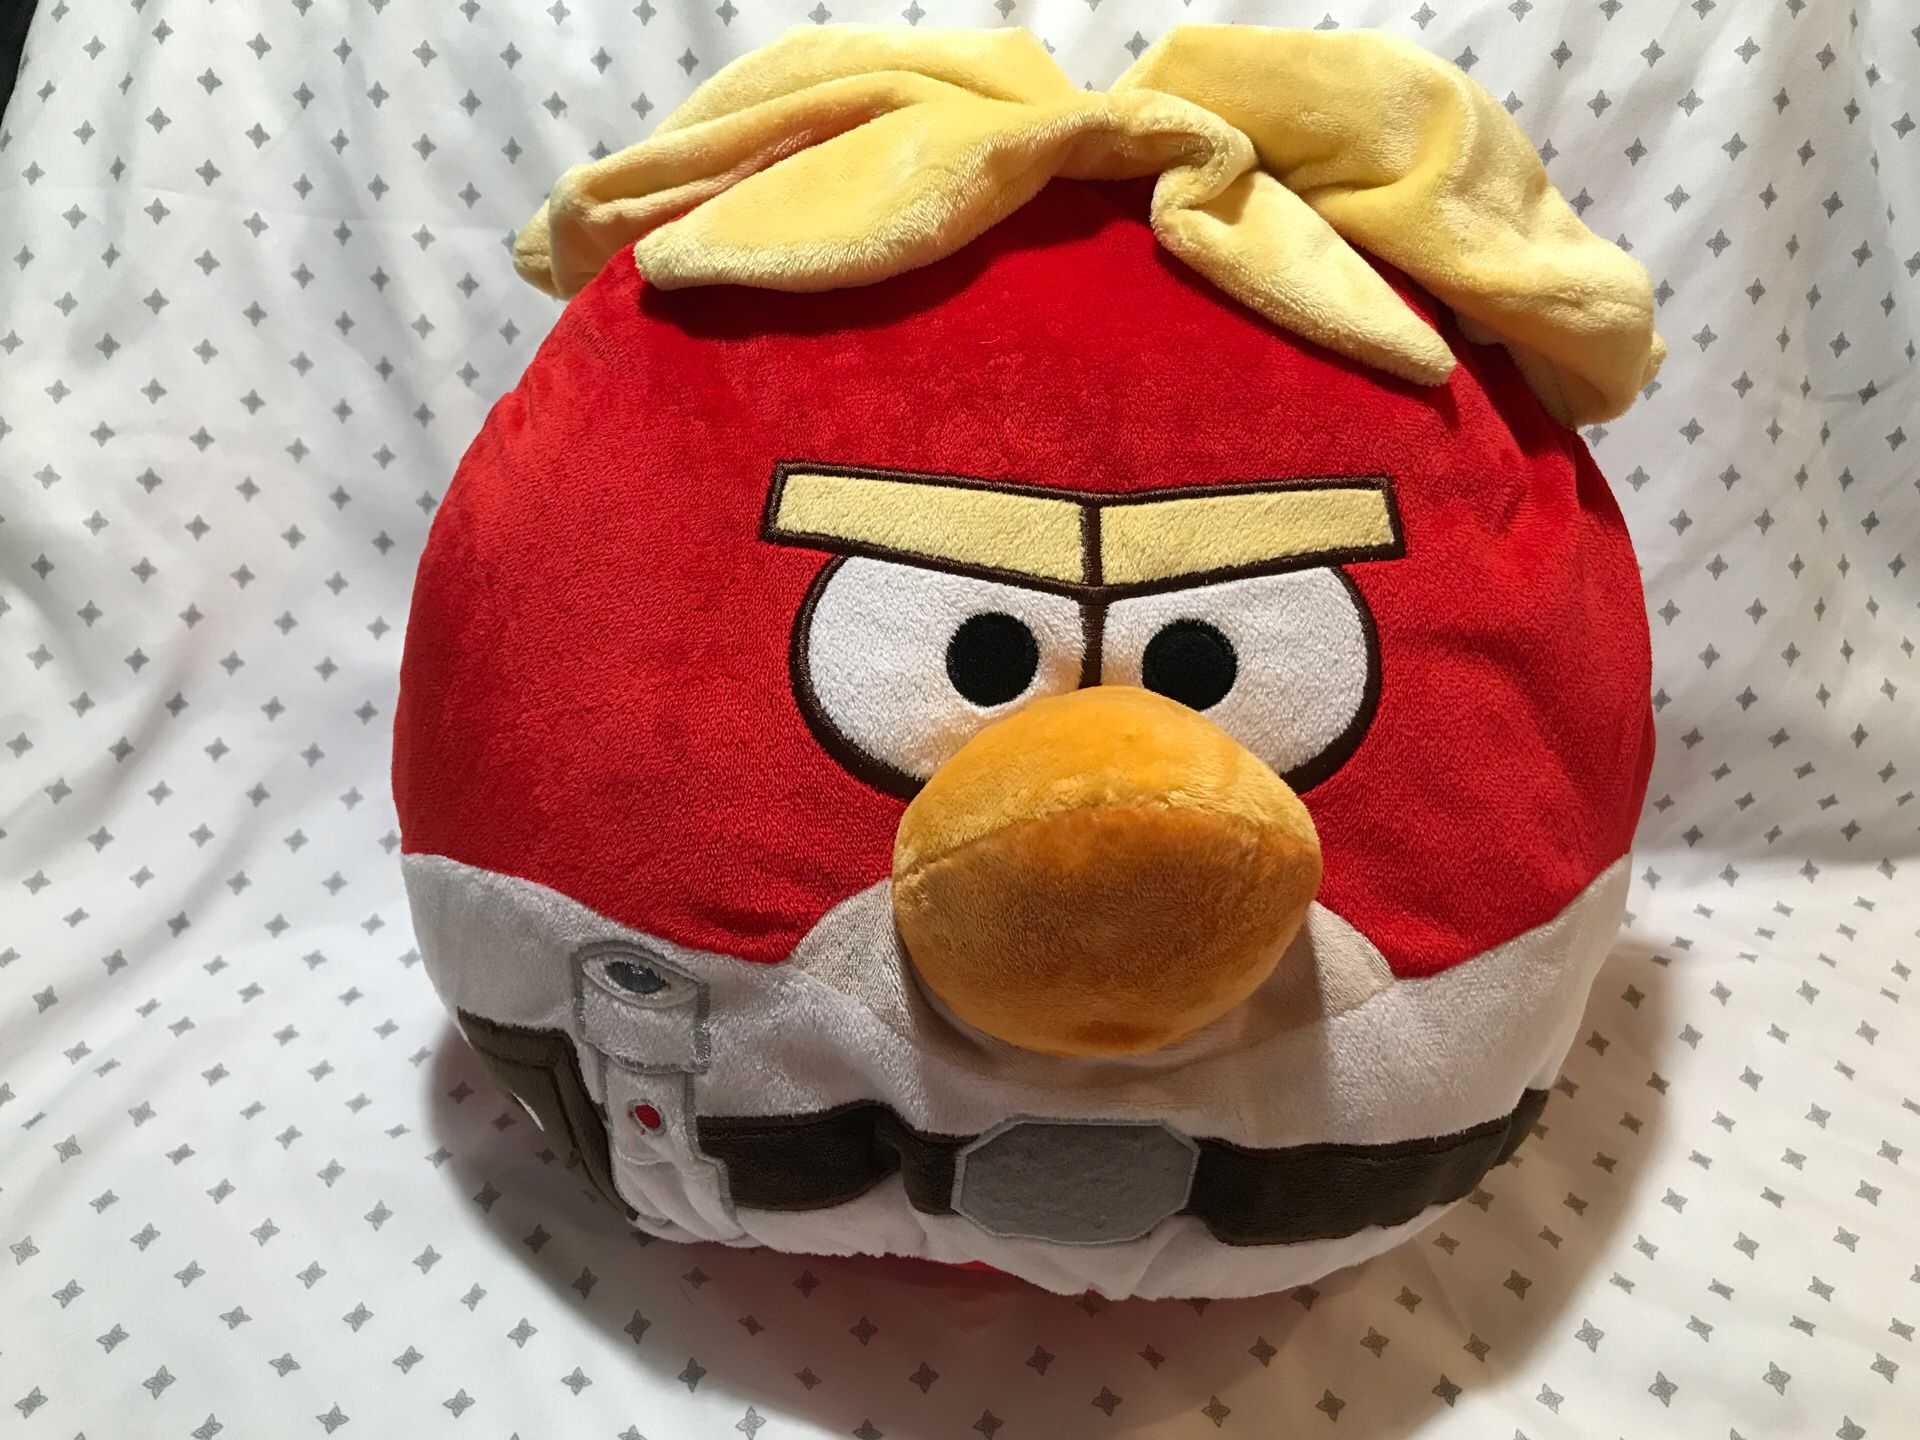 14” Angry Bird stuffed animal pillow